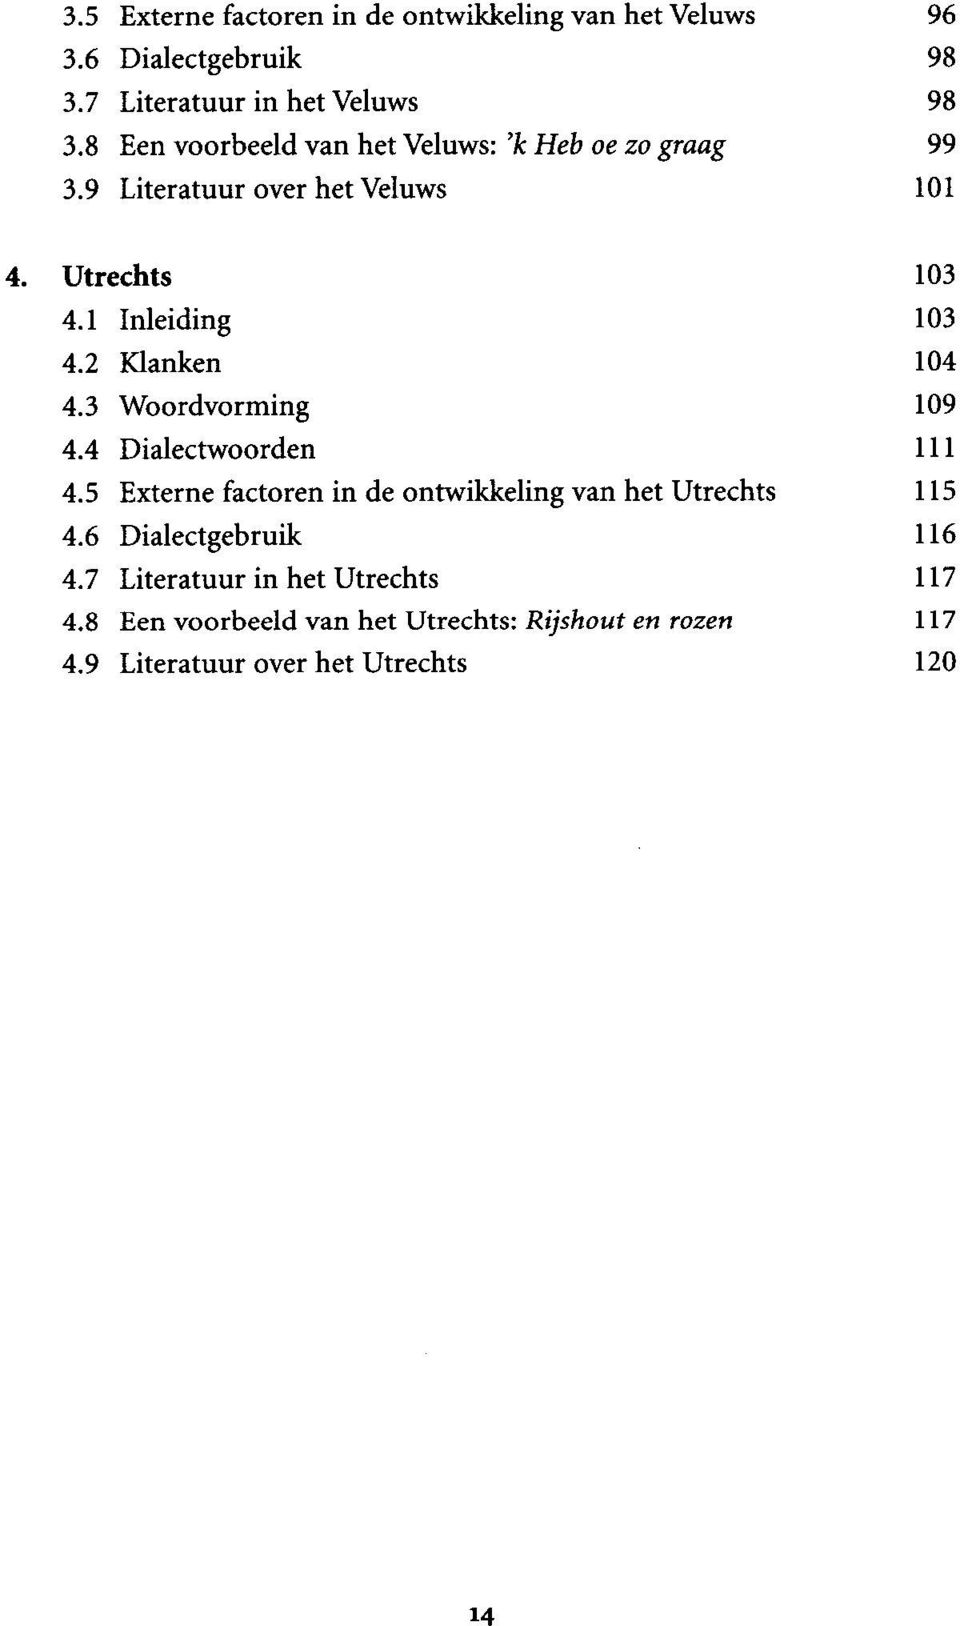 2 Klanken 104 4.3 Woordvorming 109 4.4 Dialectwoorden 111 4.5 Externe factoren in de ontwikkeling van het Utrechts 115 4.